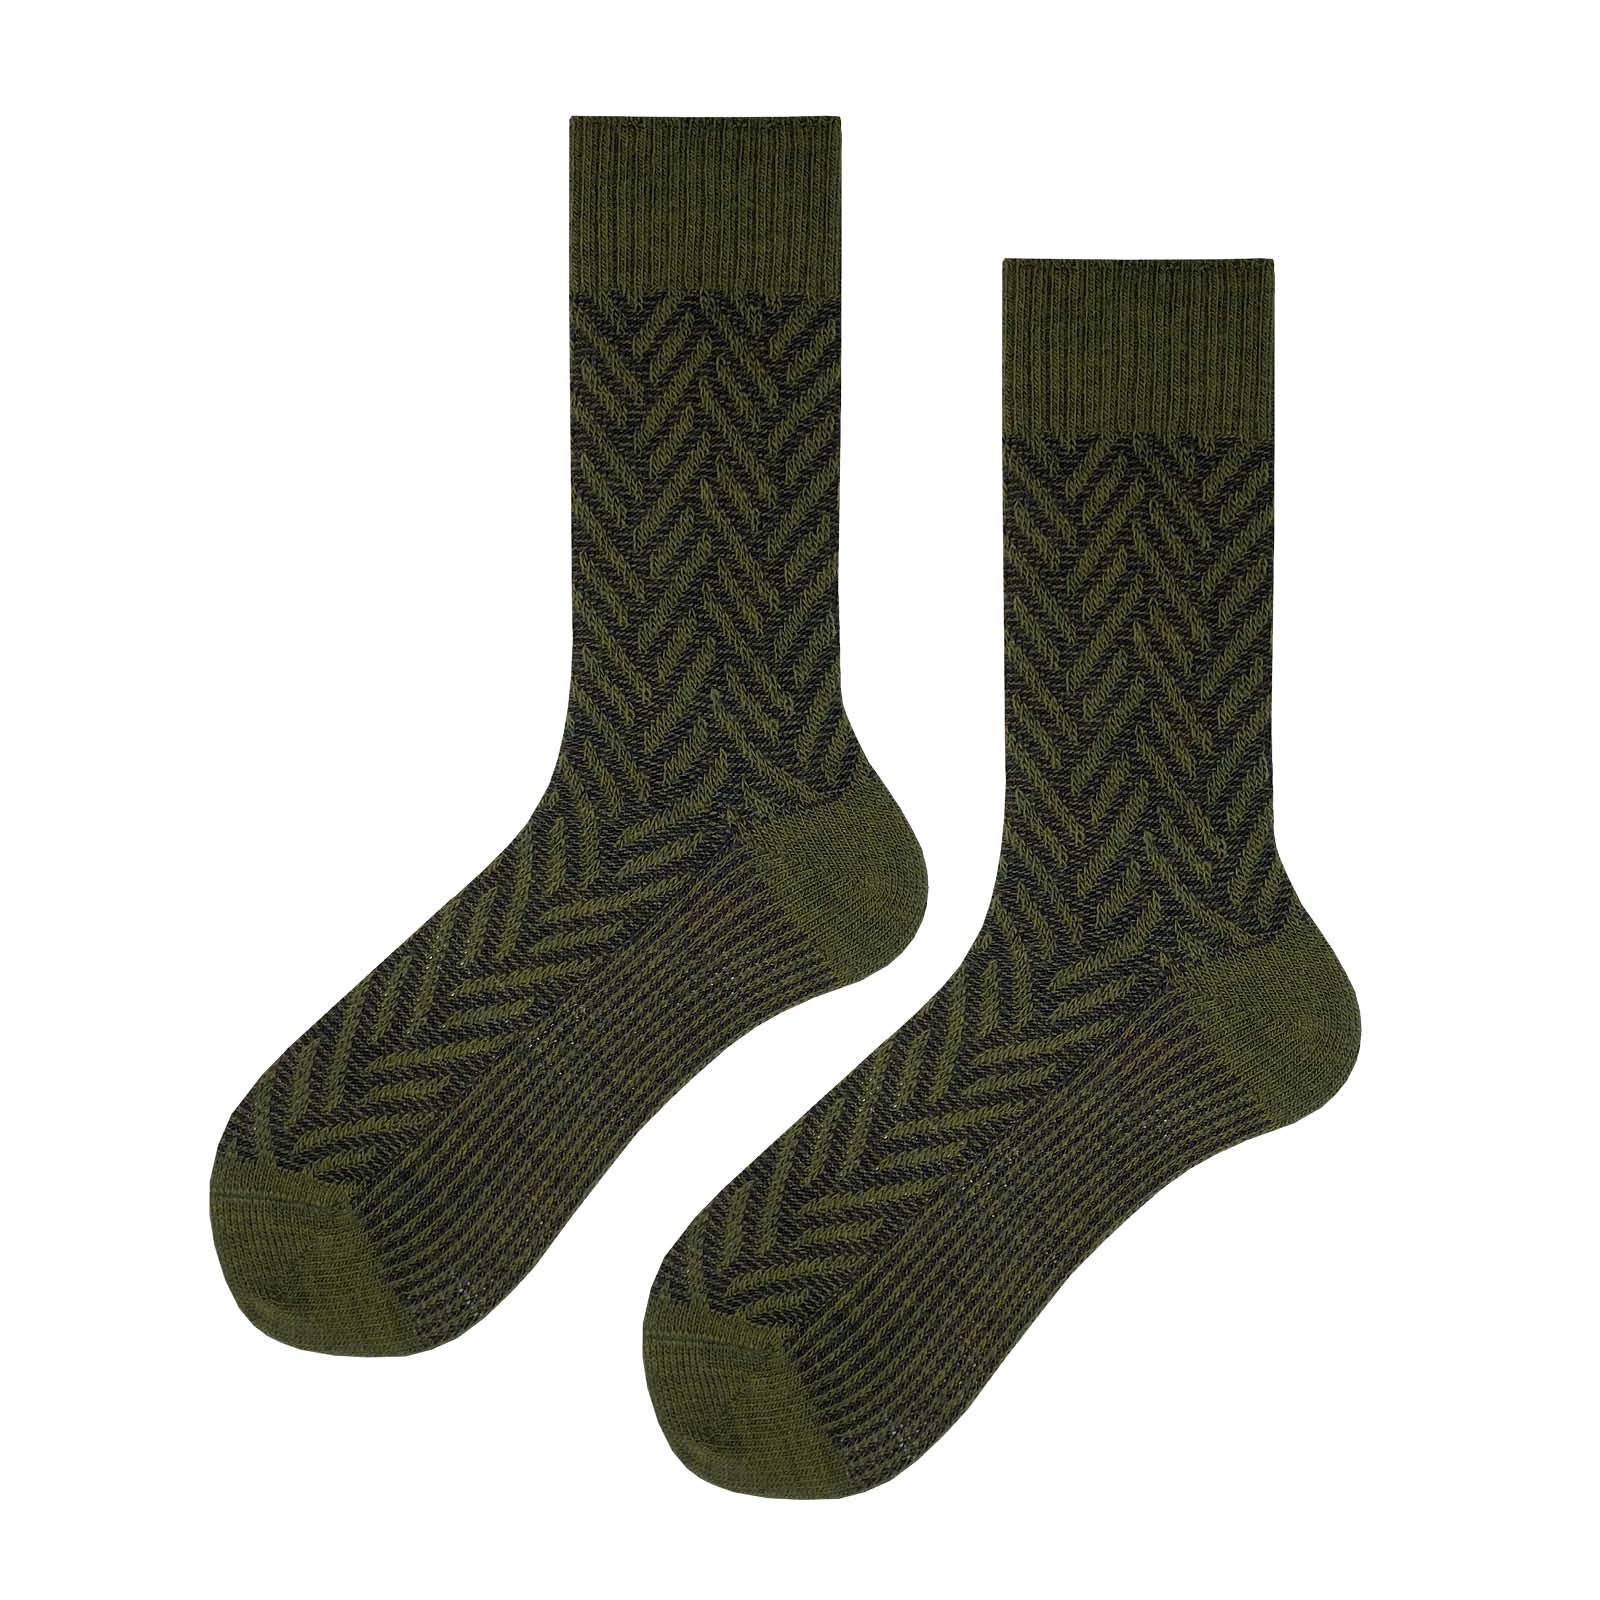 HUDSON Herren ARROW -  47/50 - Herren Socken mit klassischer  winterlicher Musterung - Militarymel. (Grün)